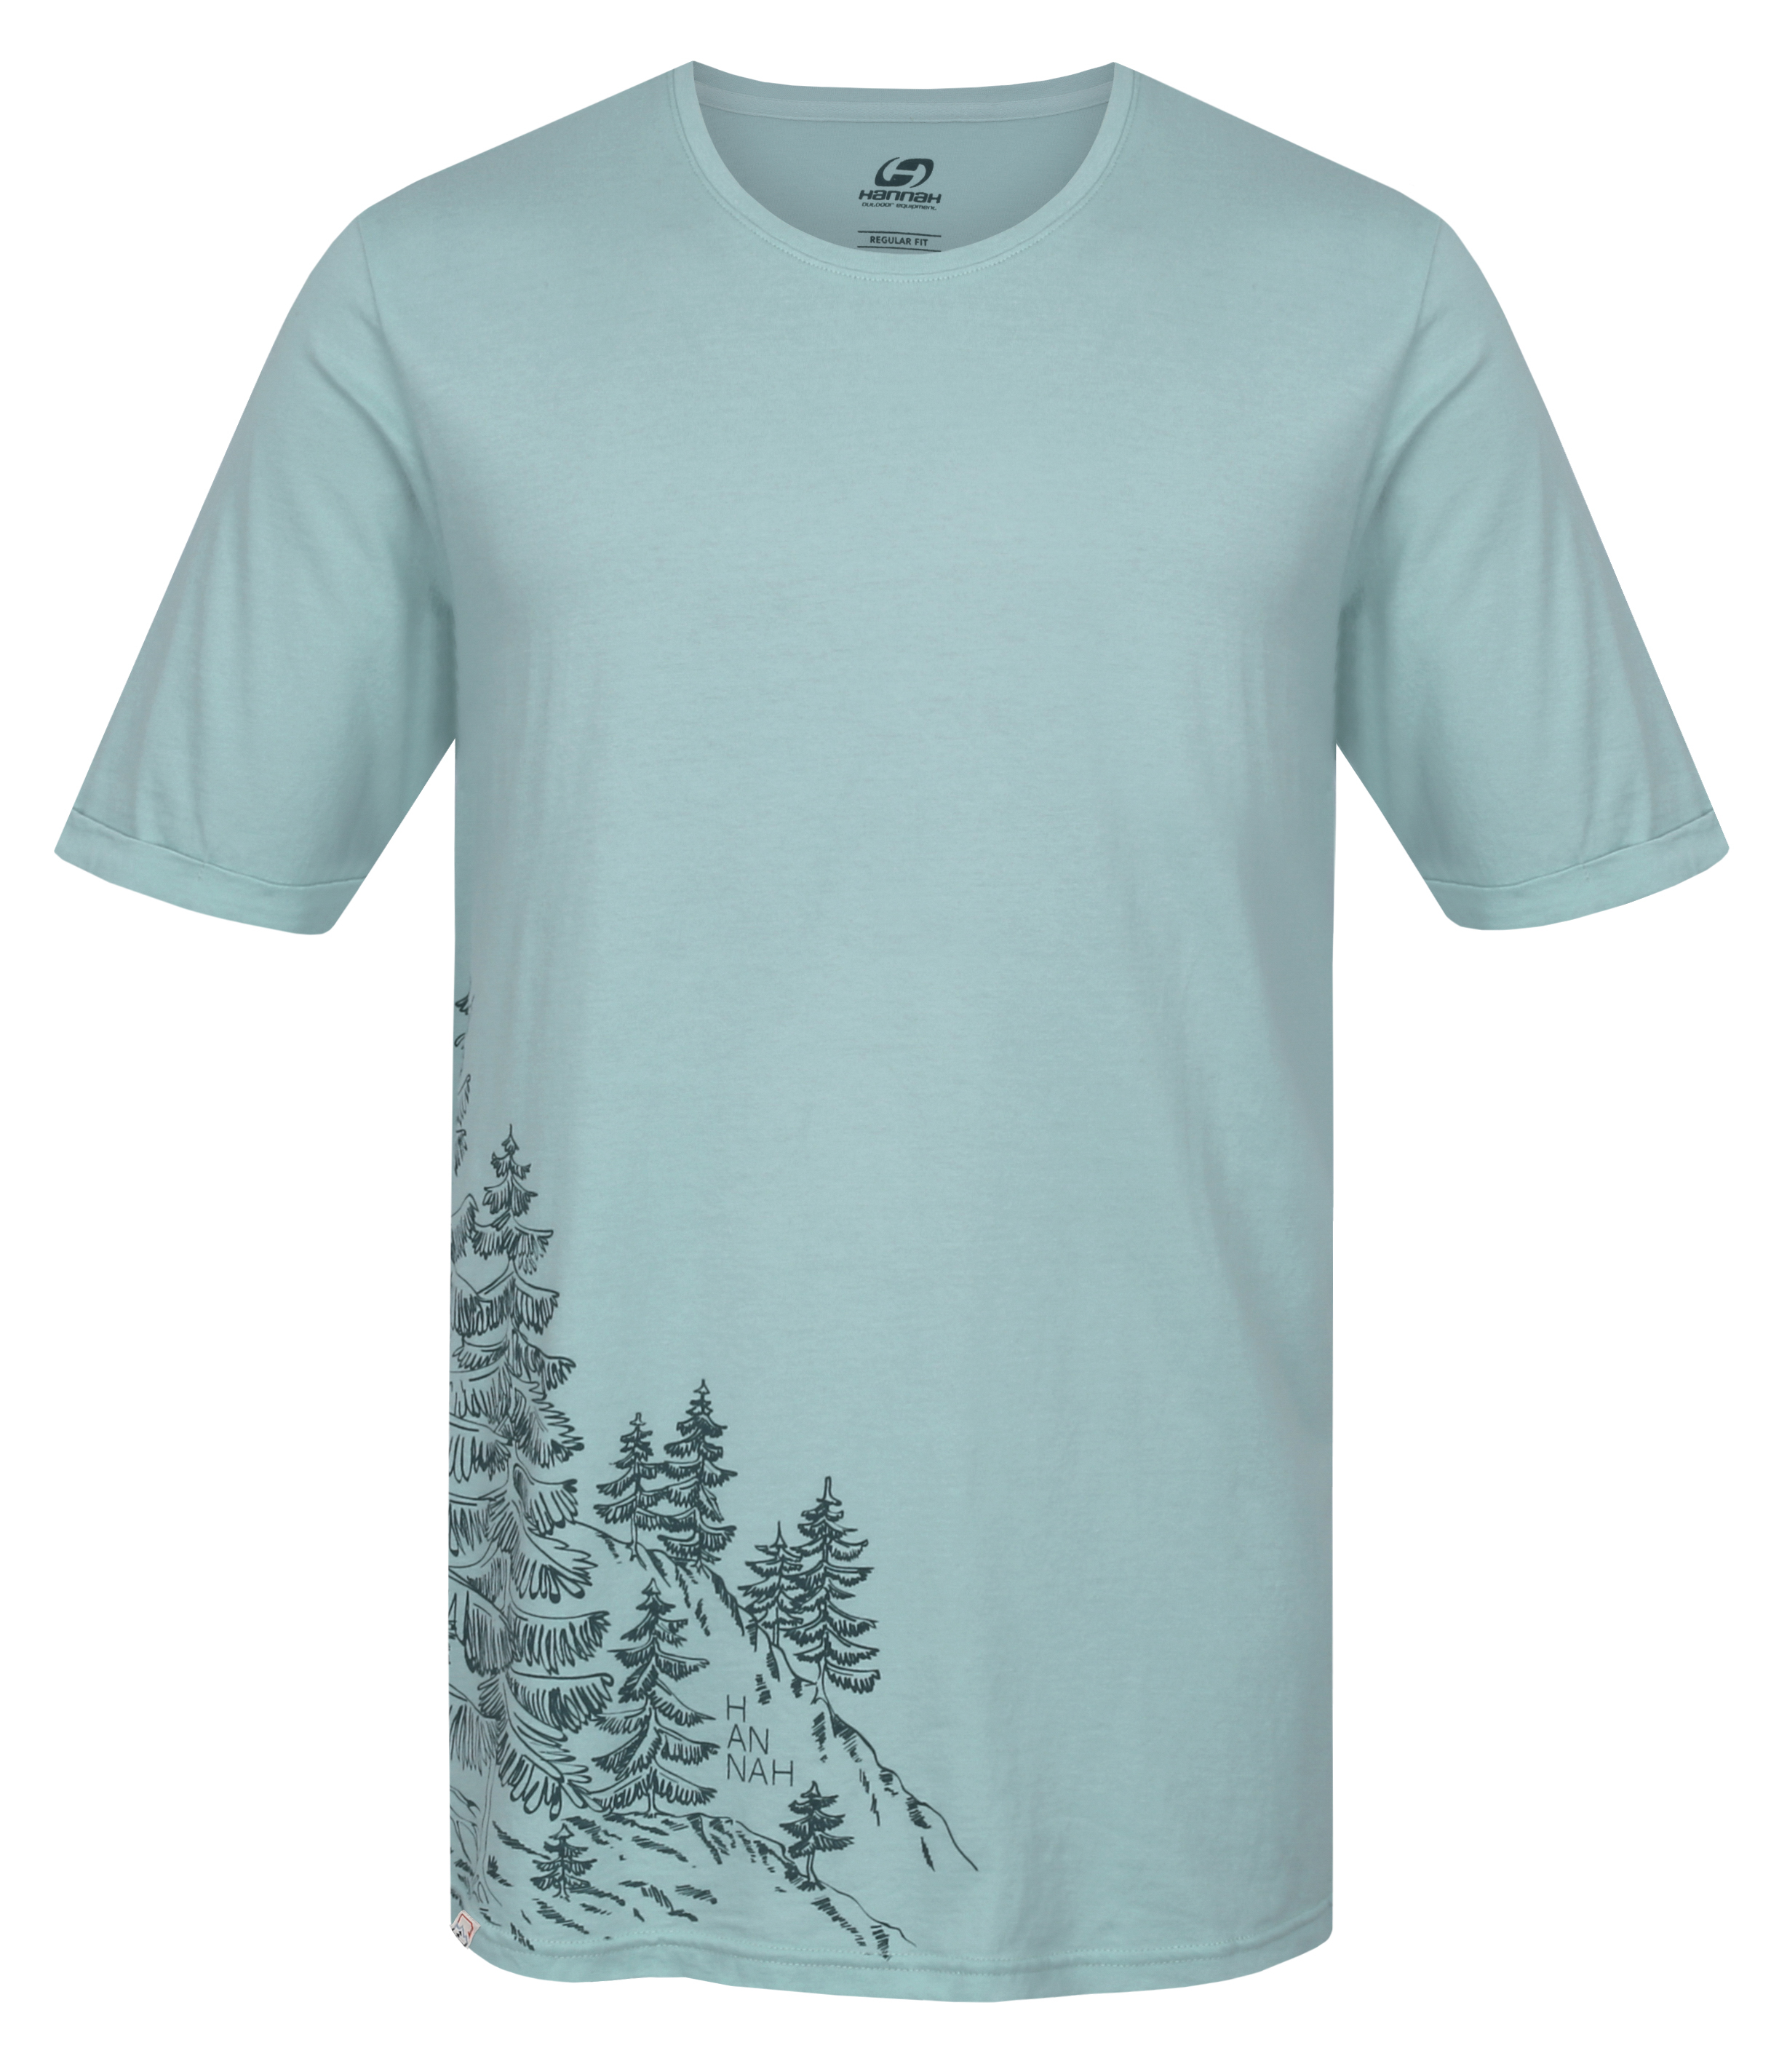 Hannah FLIT harbor gray Velikost: M pánské tričko s krátkým rukávem